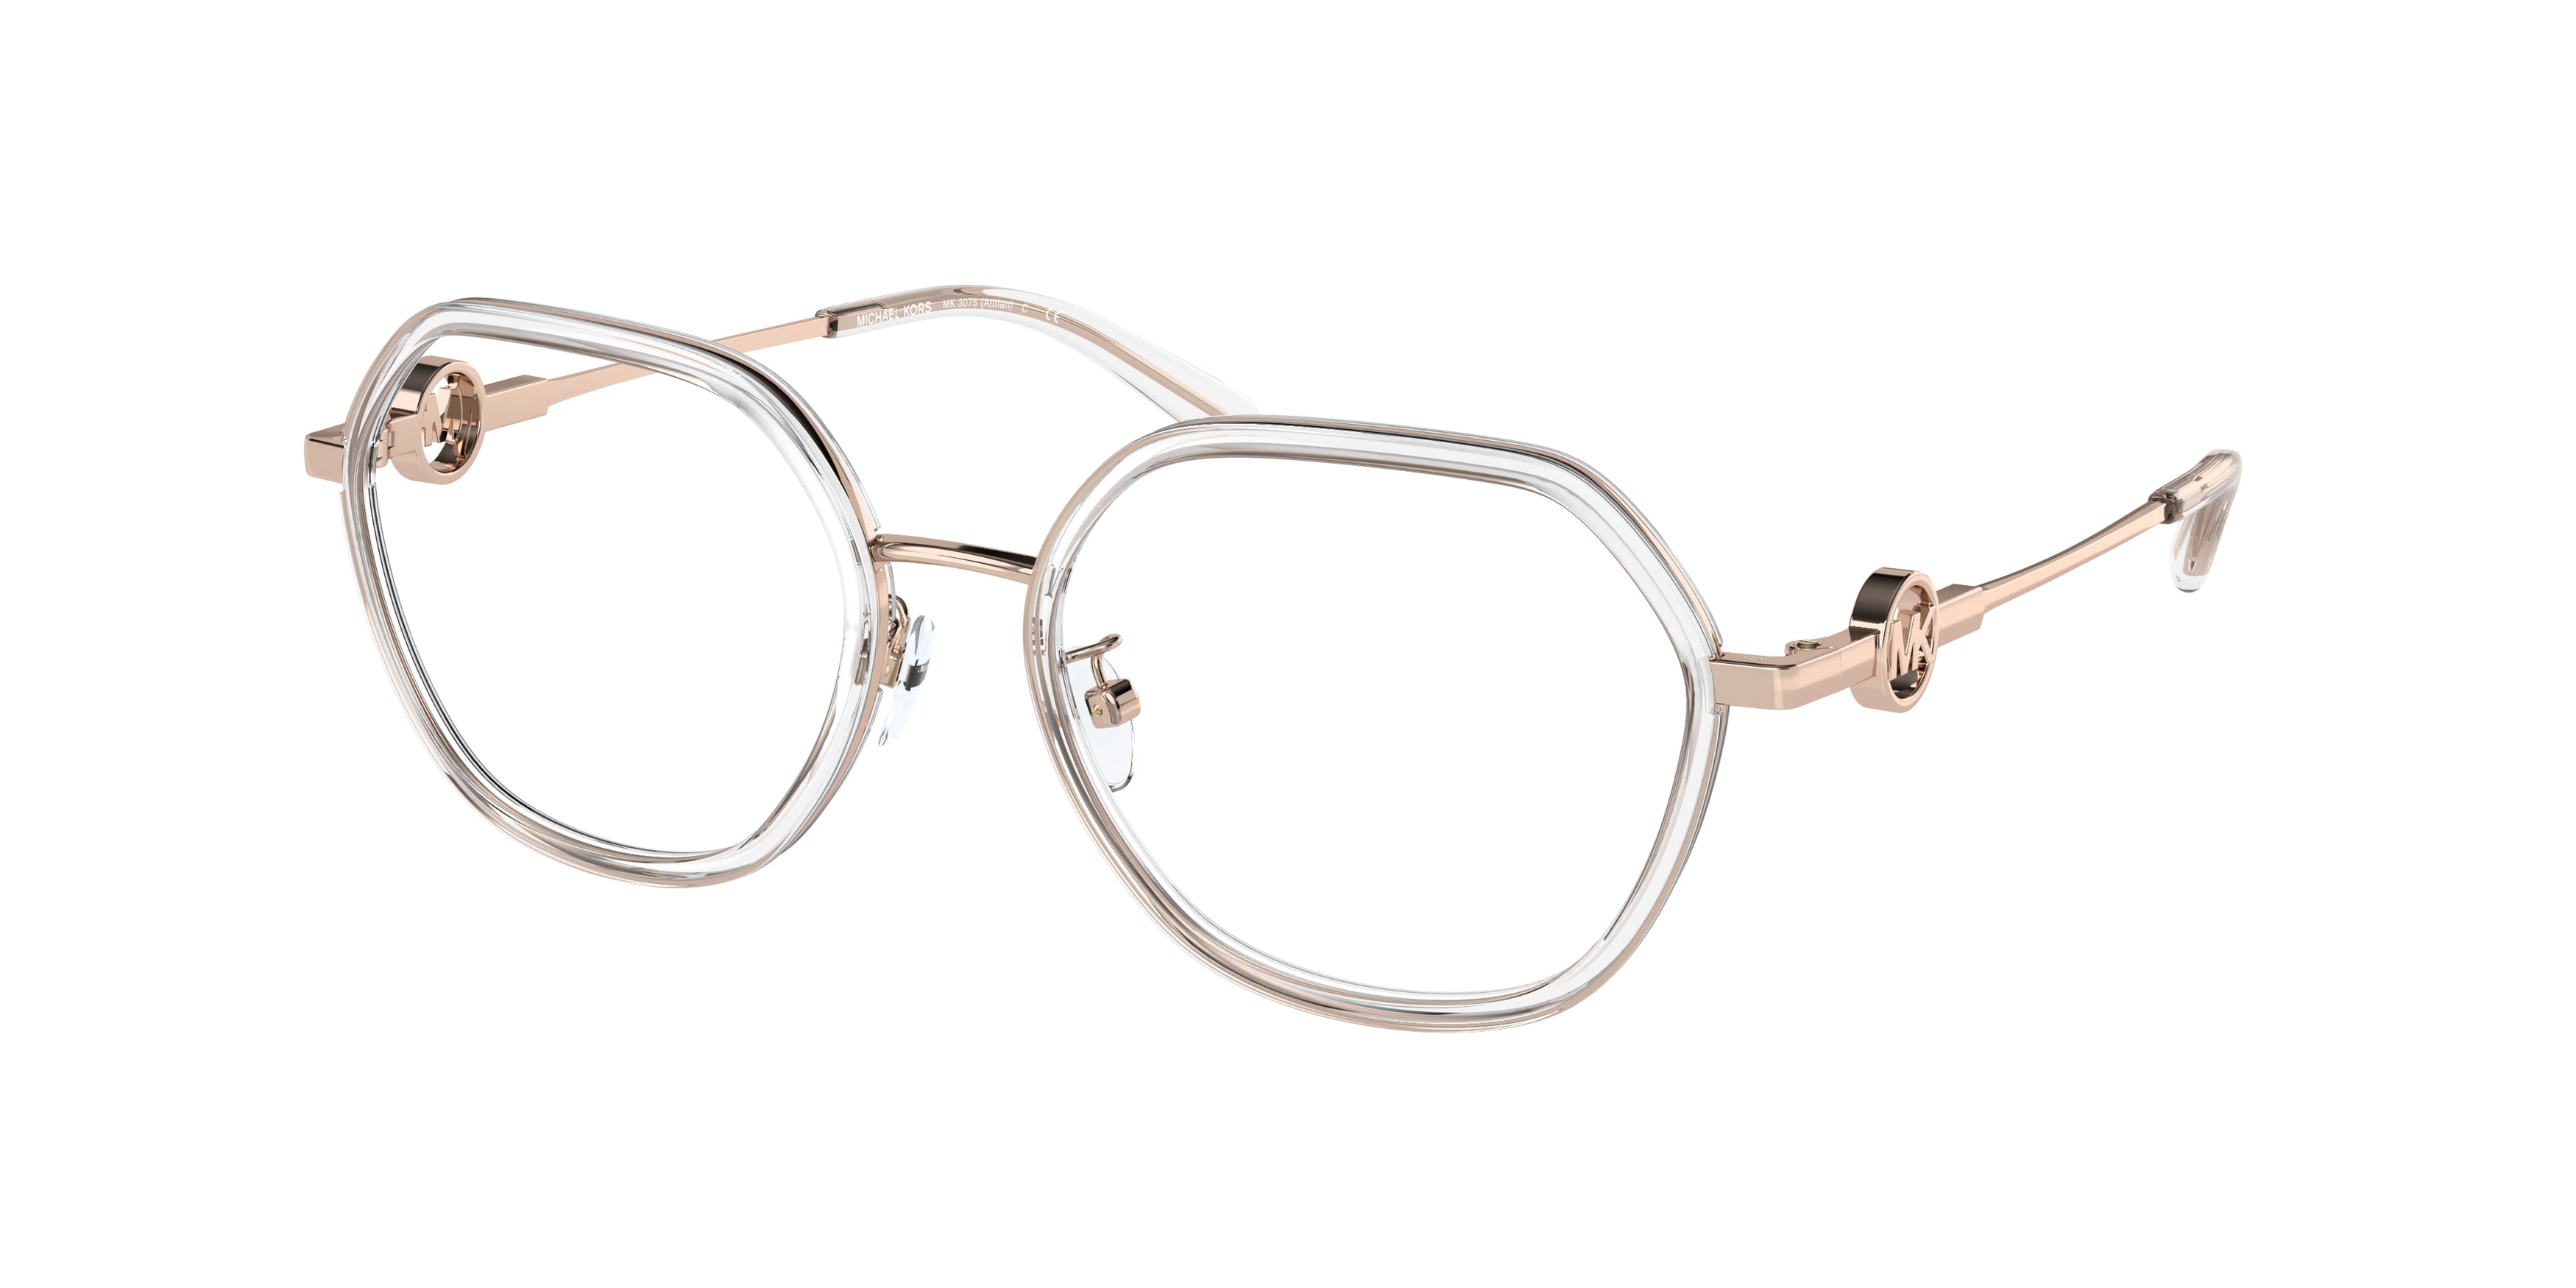 Michael Kors ATITLAN MK3057 Irregular Eyeglasses